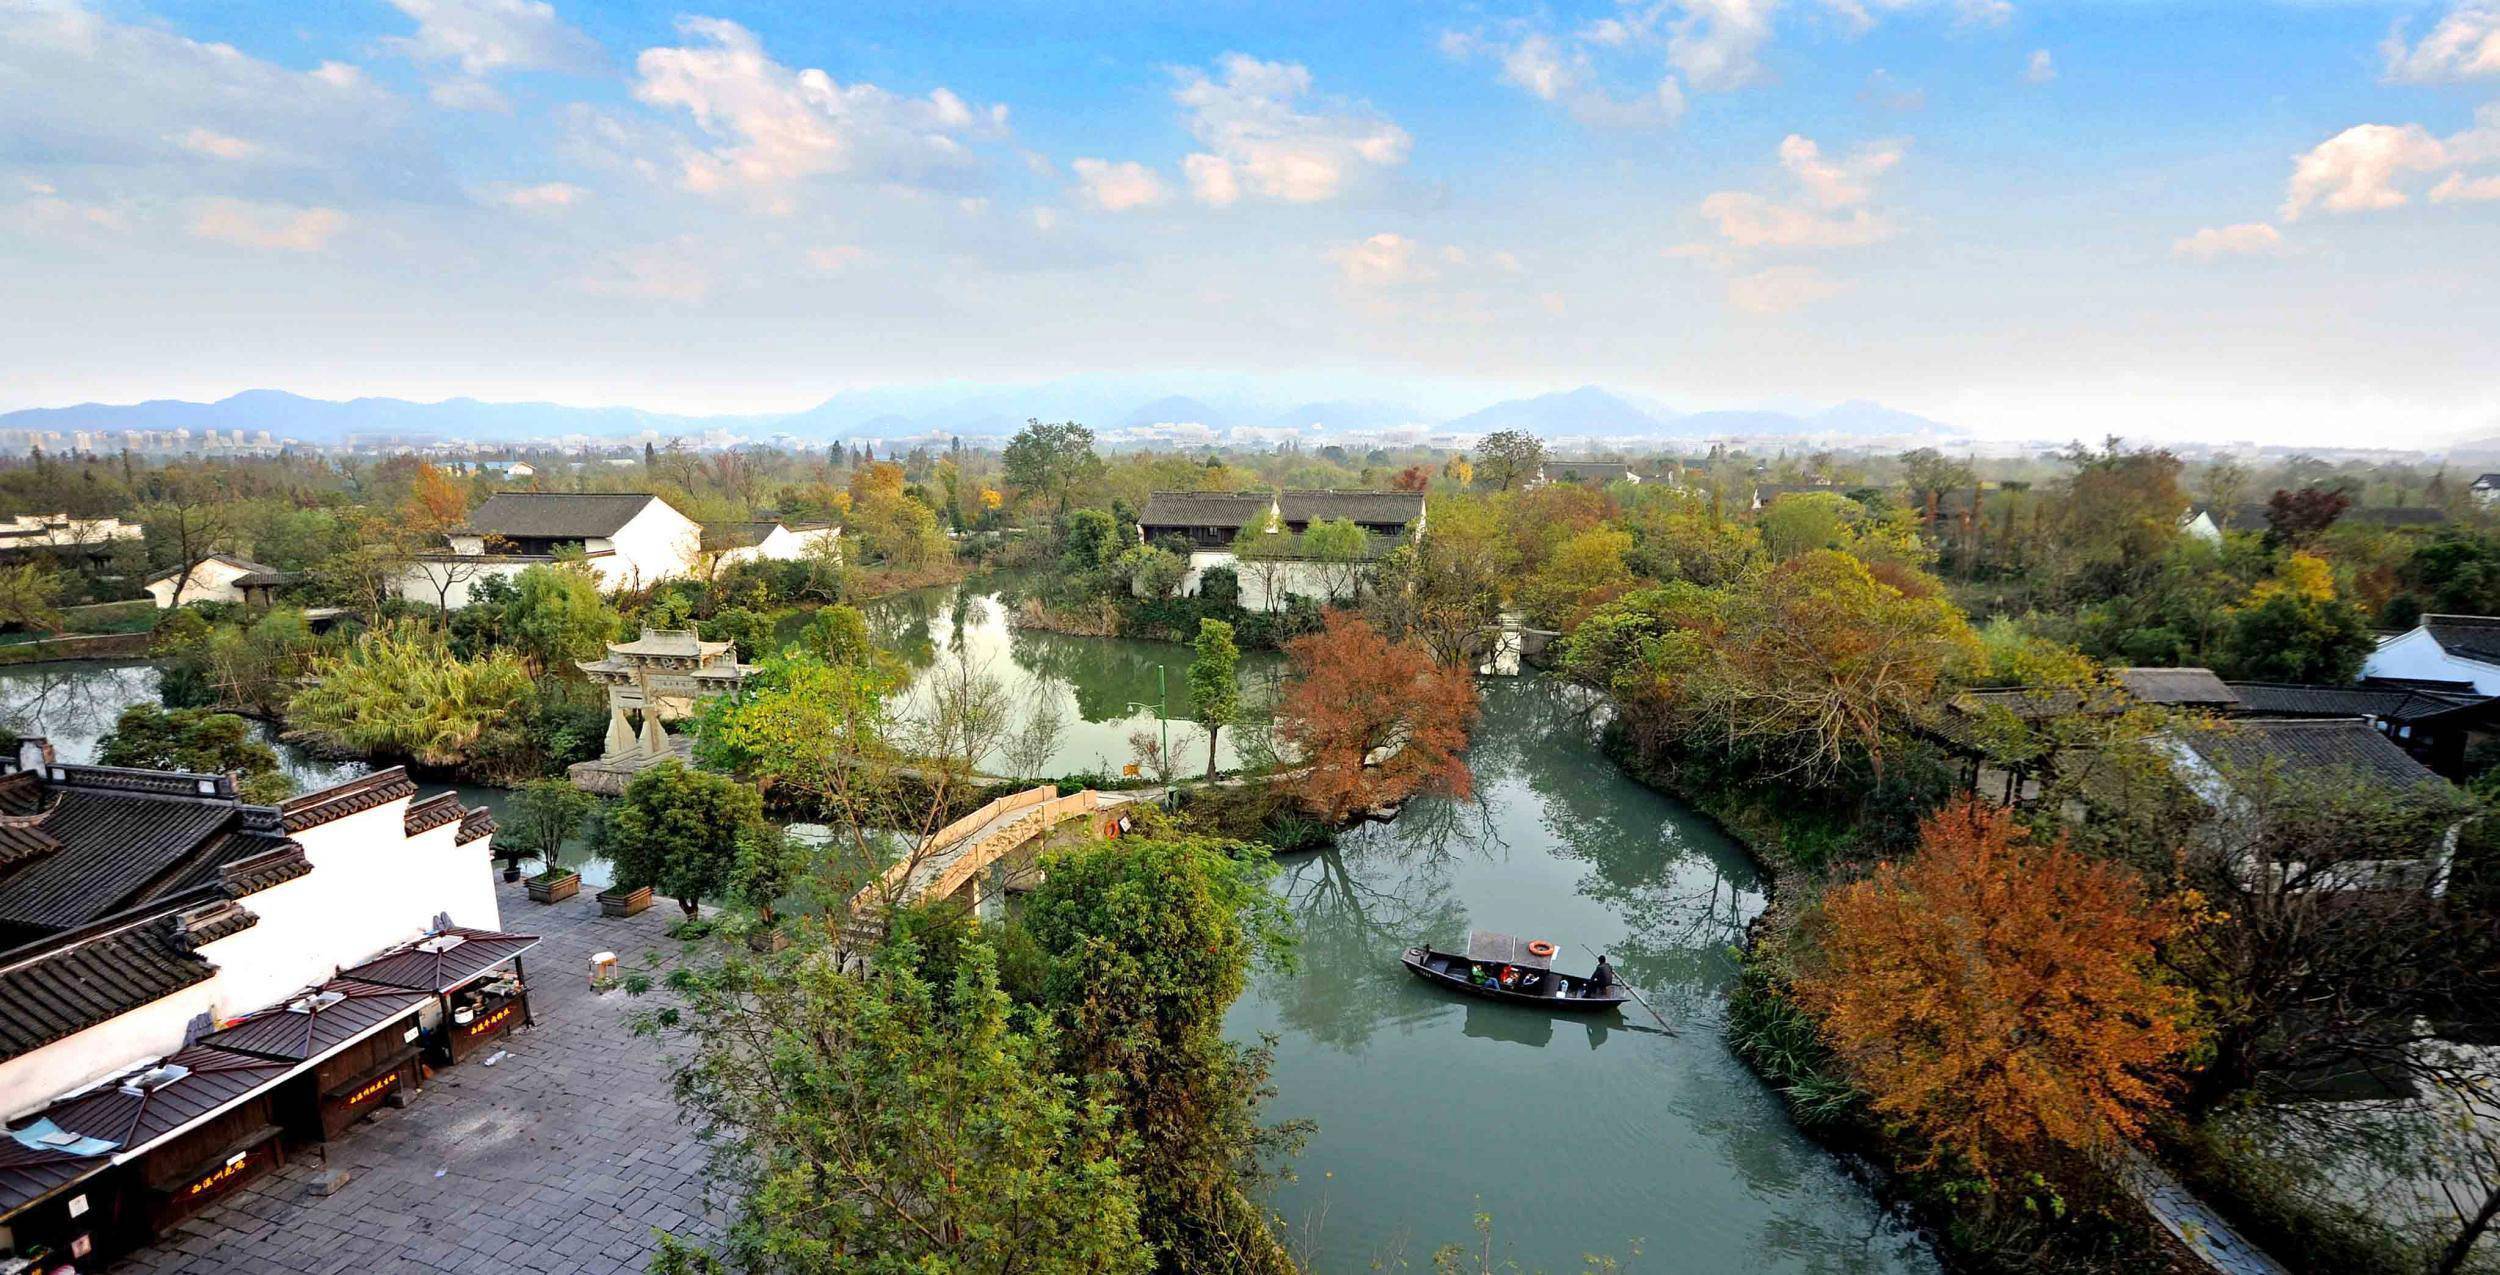 与西湖相邻,被称为杭州之肾,中国湿地第一园,城市中的天然湿地